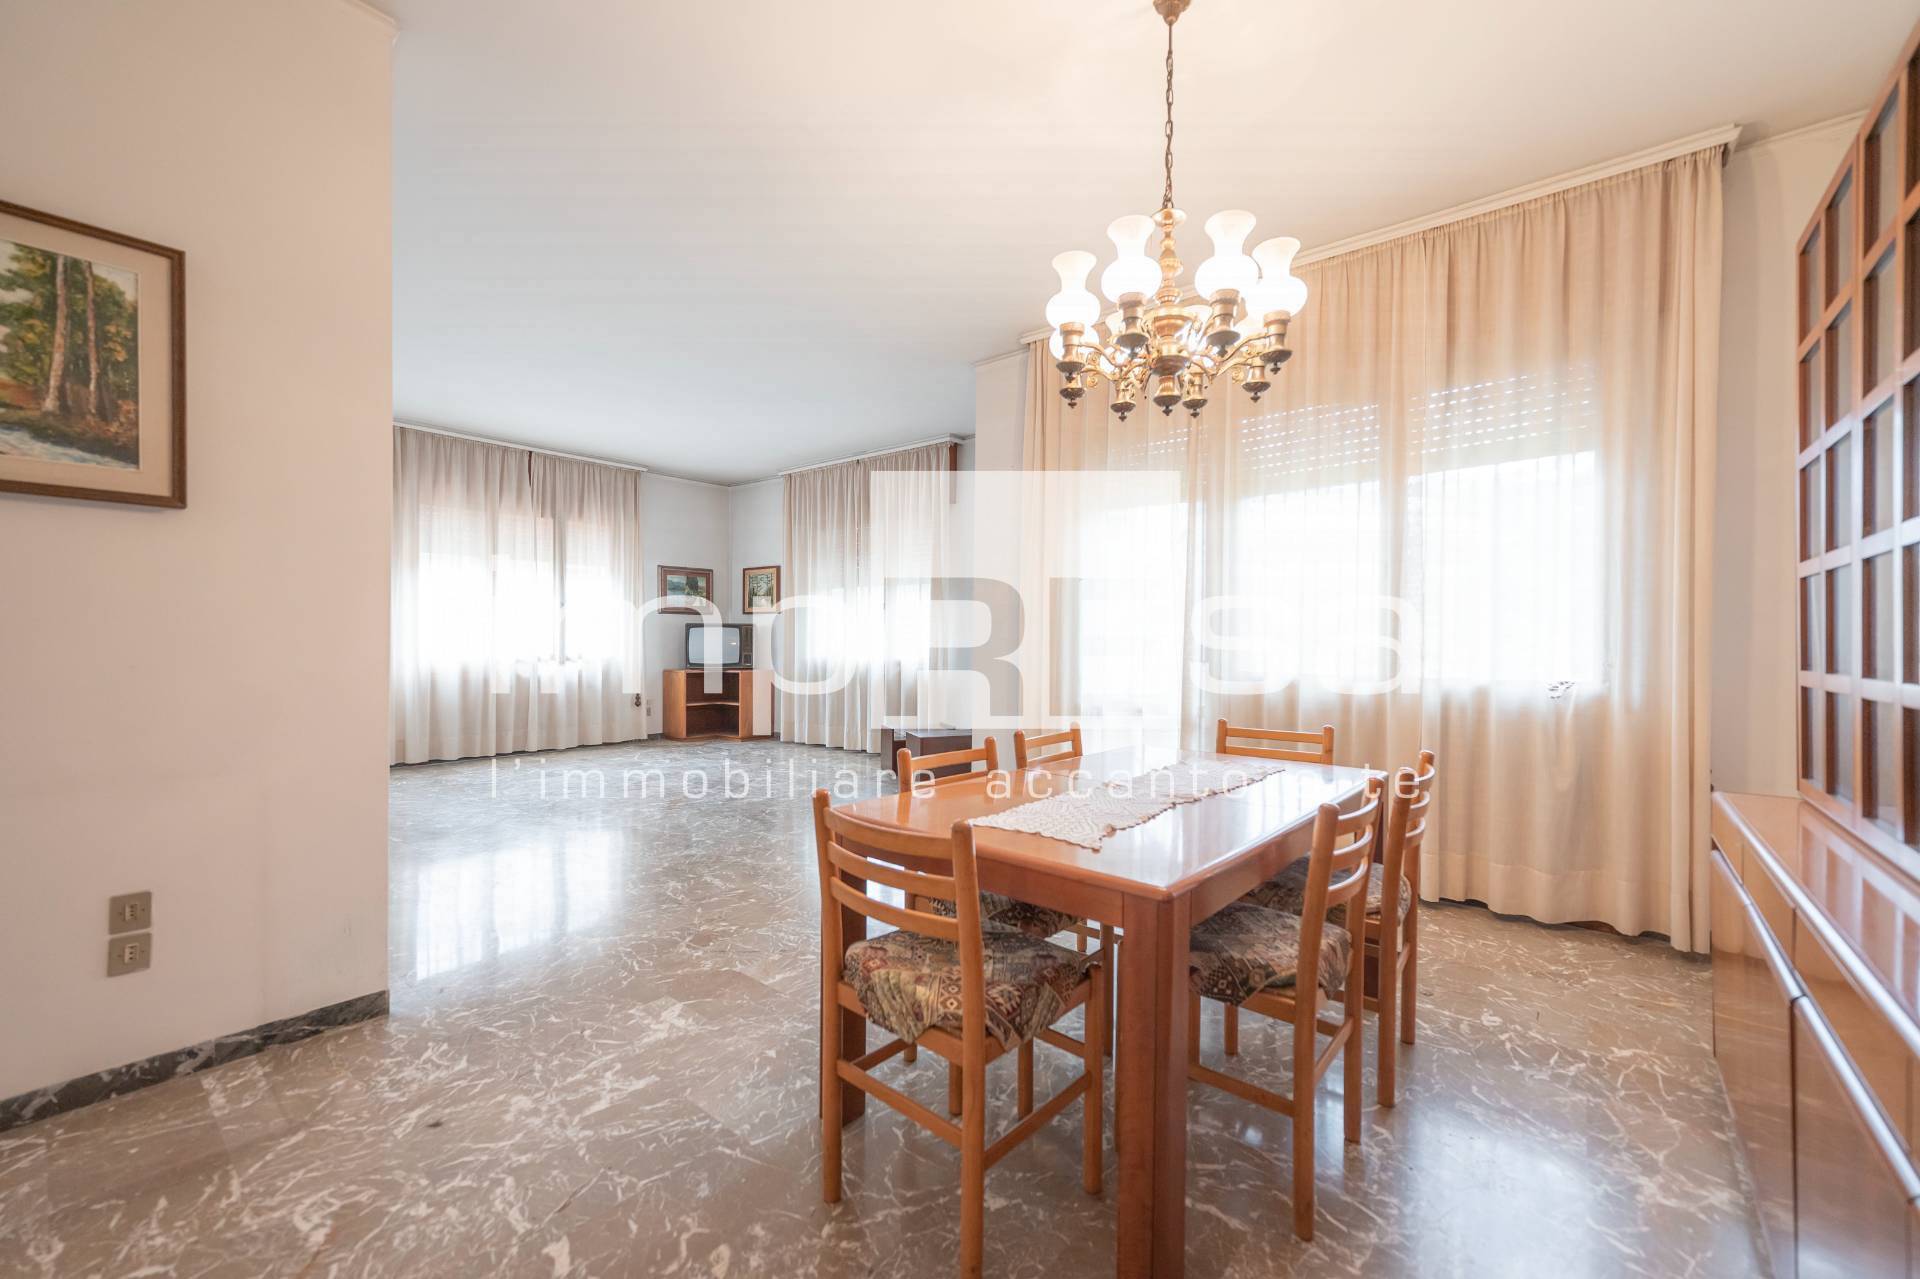 Appartamento in vendita a Conegliano, 9 locali, zona Località: Centro, prezzo € 220.000 | PortaleAgenzieImmobiliari.it